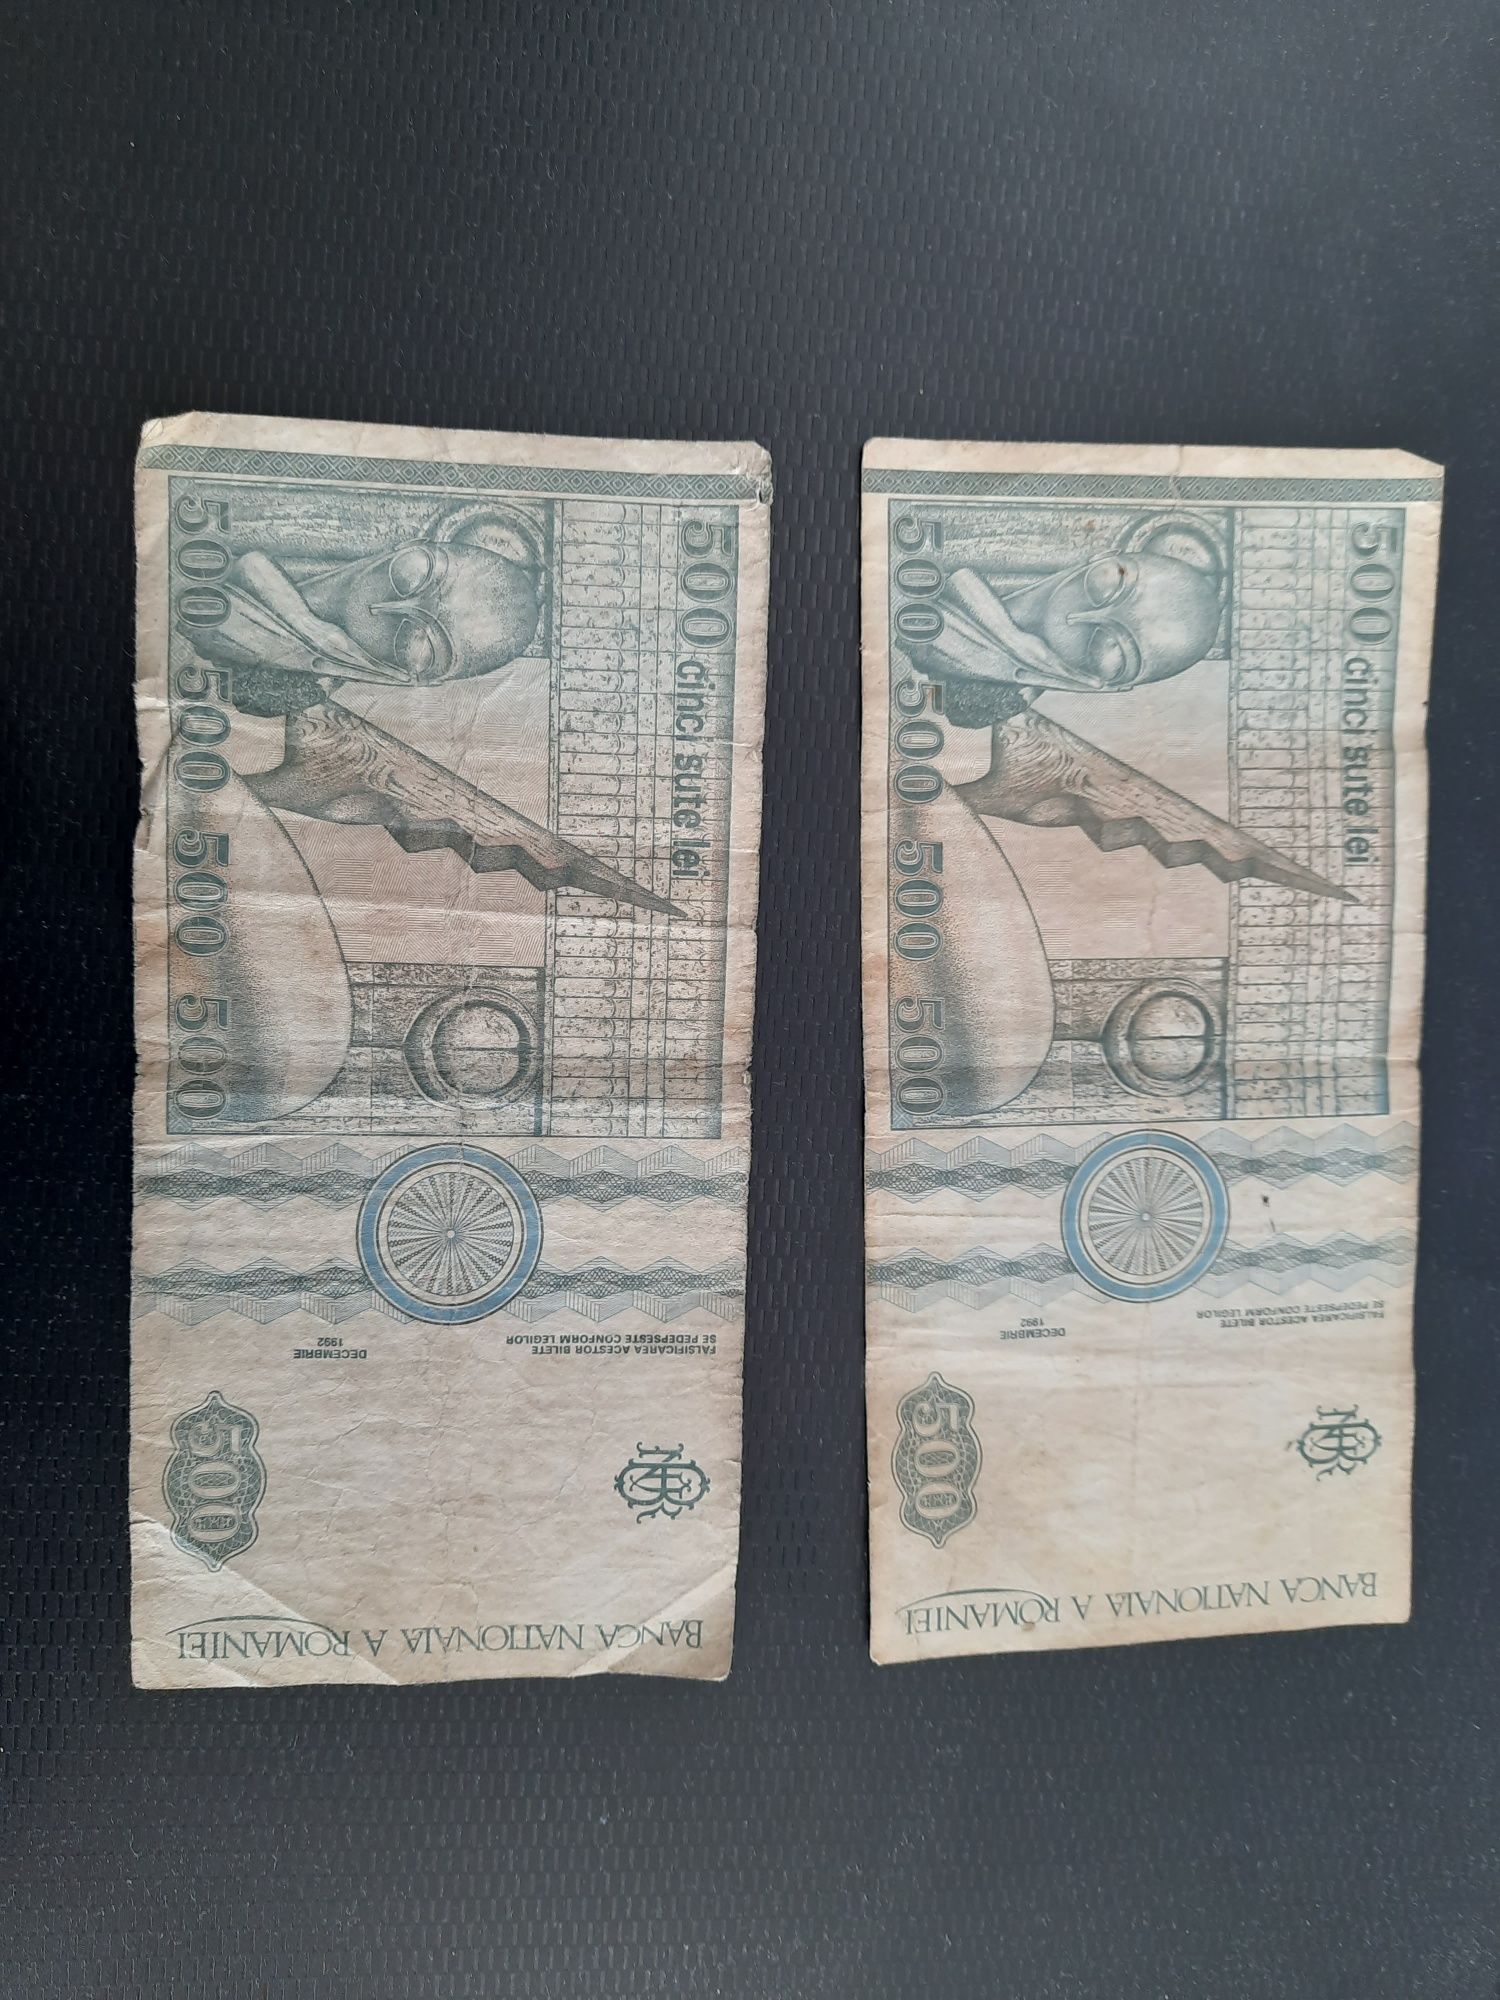 Bancnota veche de 500 lei